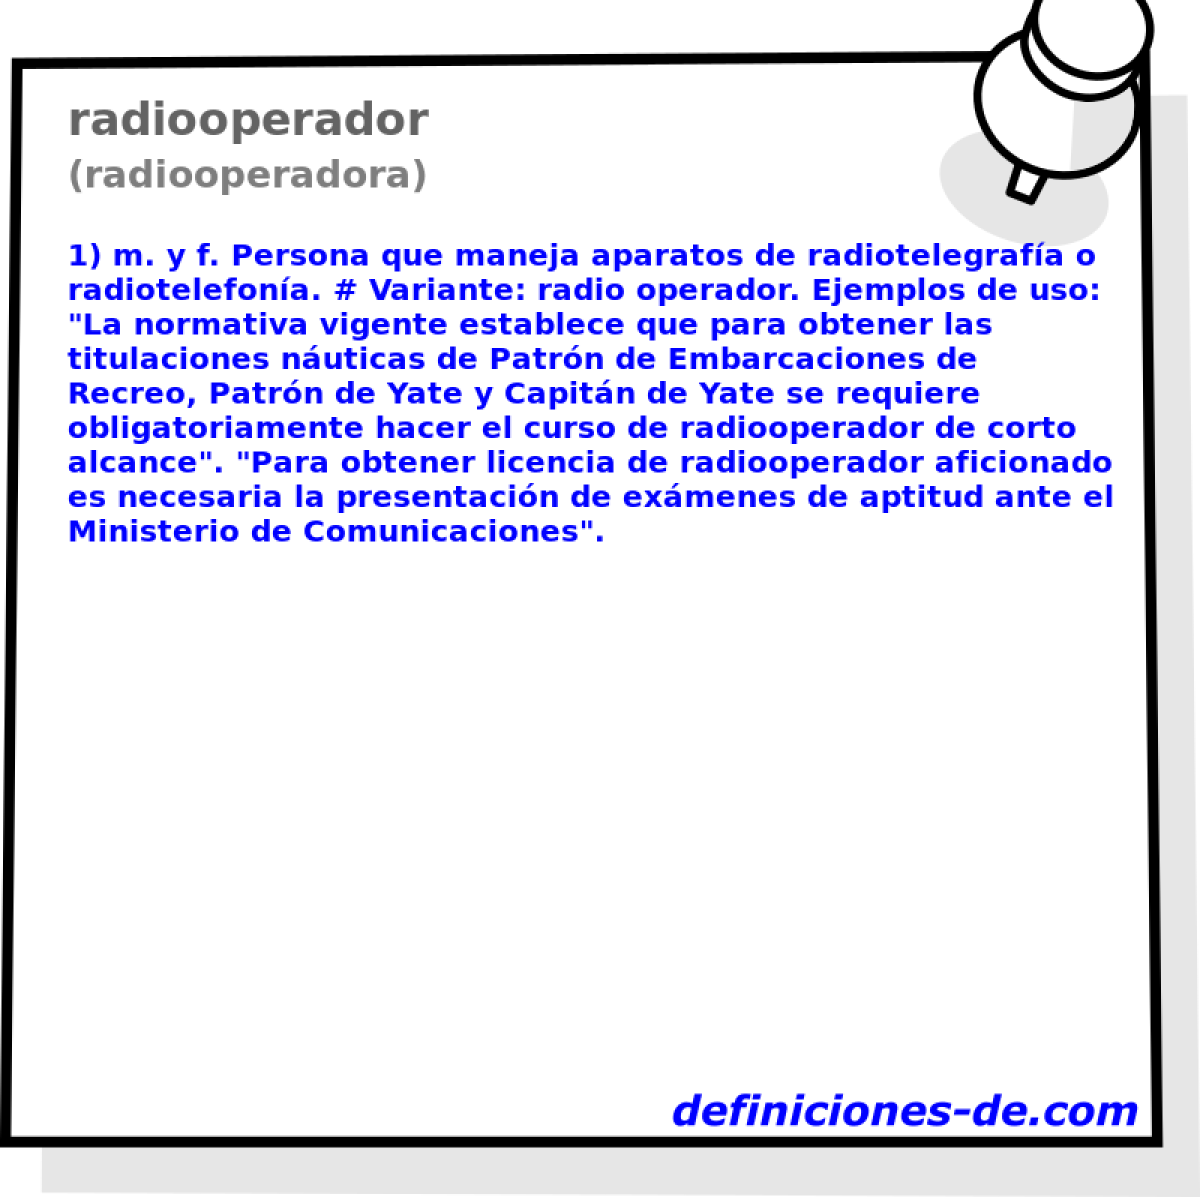 radiooperador (radiooperadora)